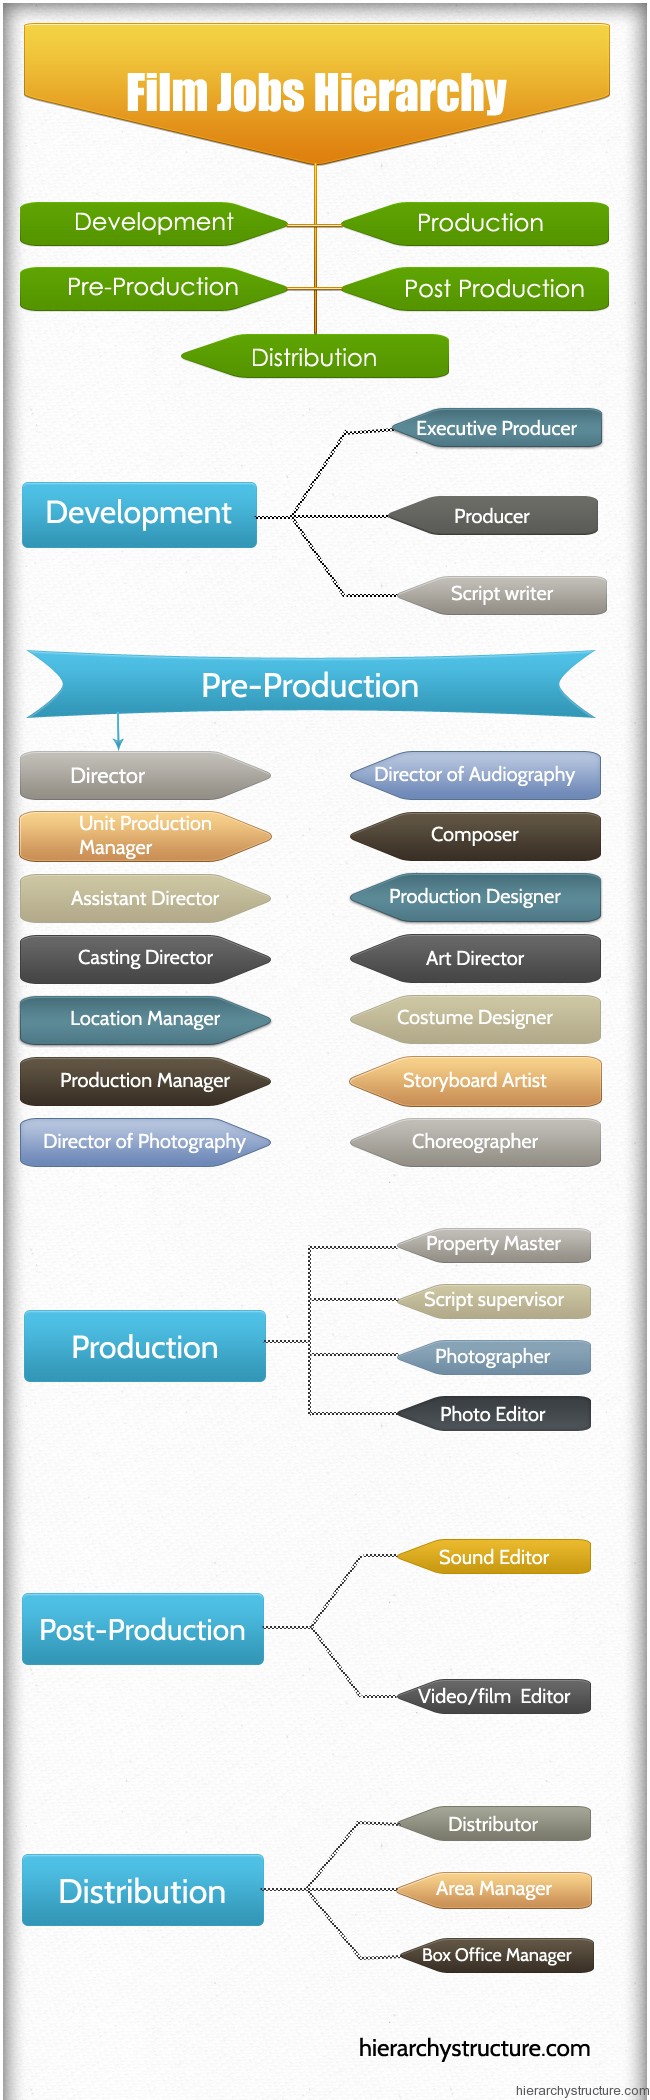 Film Jobs Hierarchy